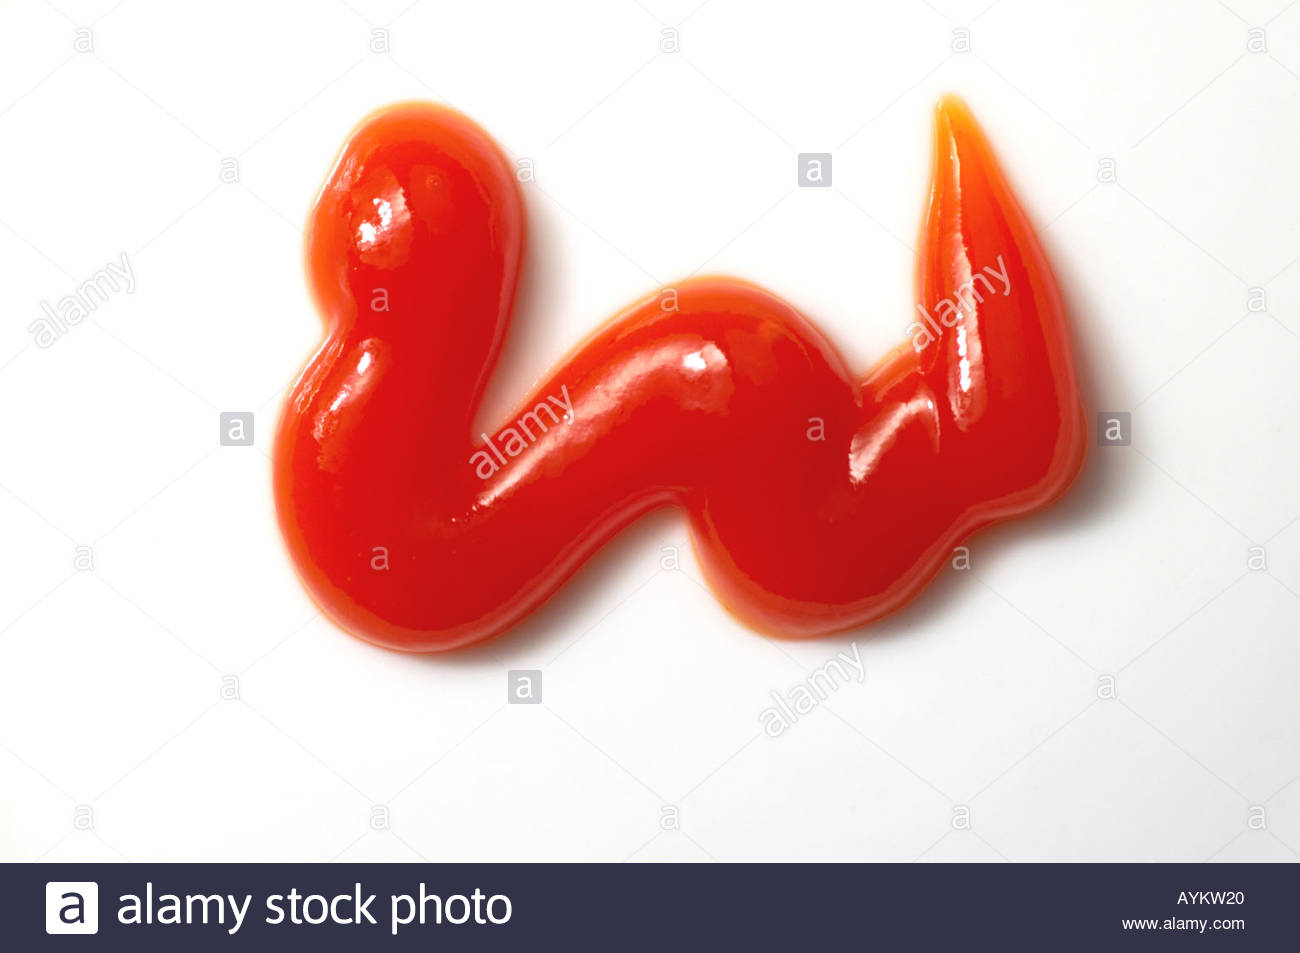 Una pompetta di tomato ketchup su sfondo bianco Foto Stock